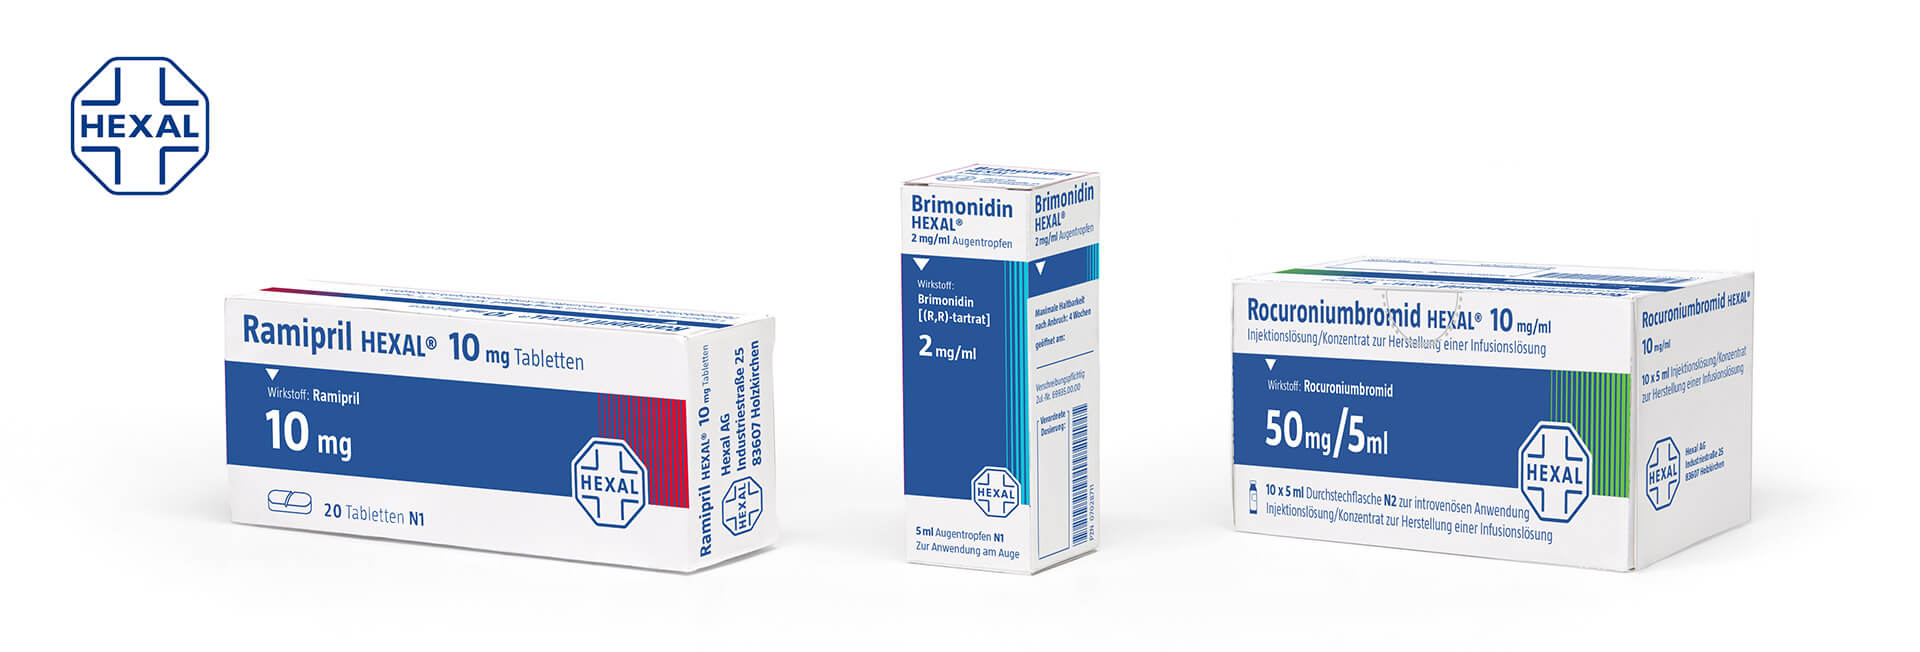 Hexal Verpackung, Arbeitsbeispiel von kakoii, der Agentur für pharma packaging.